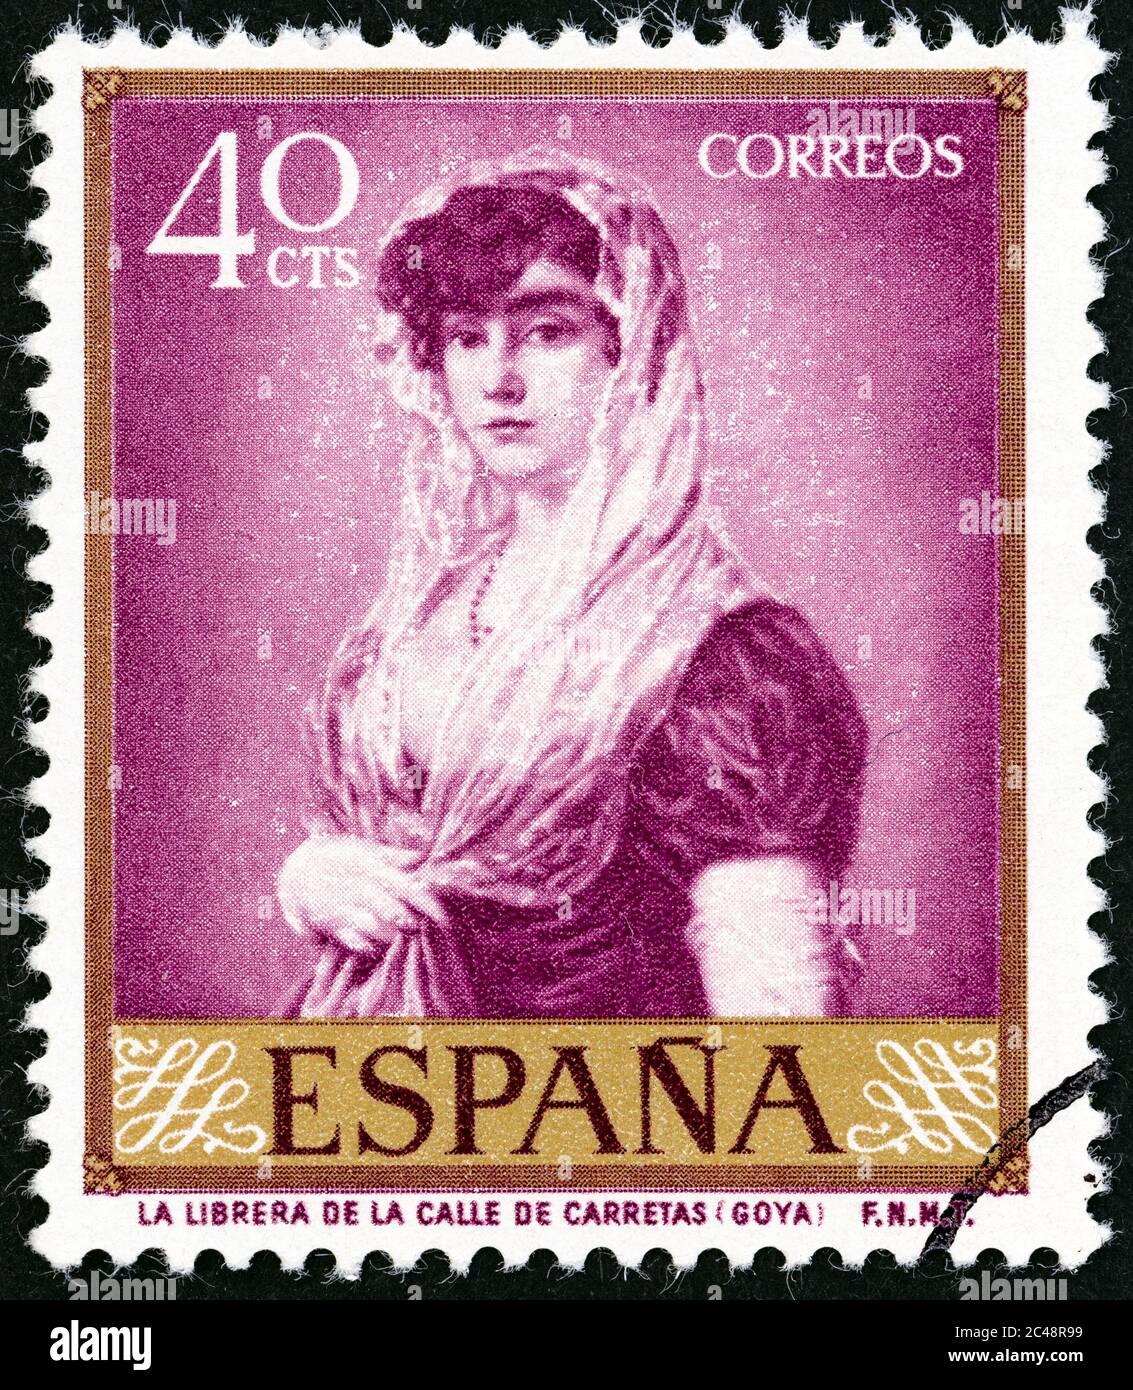 SPANIEN - UM 1958: Eine in Spanien gedruckte Briefmarke zeigt die Frau des Buchhändlers (Francisco Goya), um 1958. Stockfoto